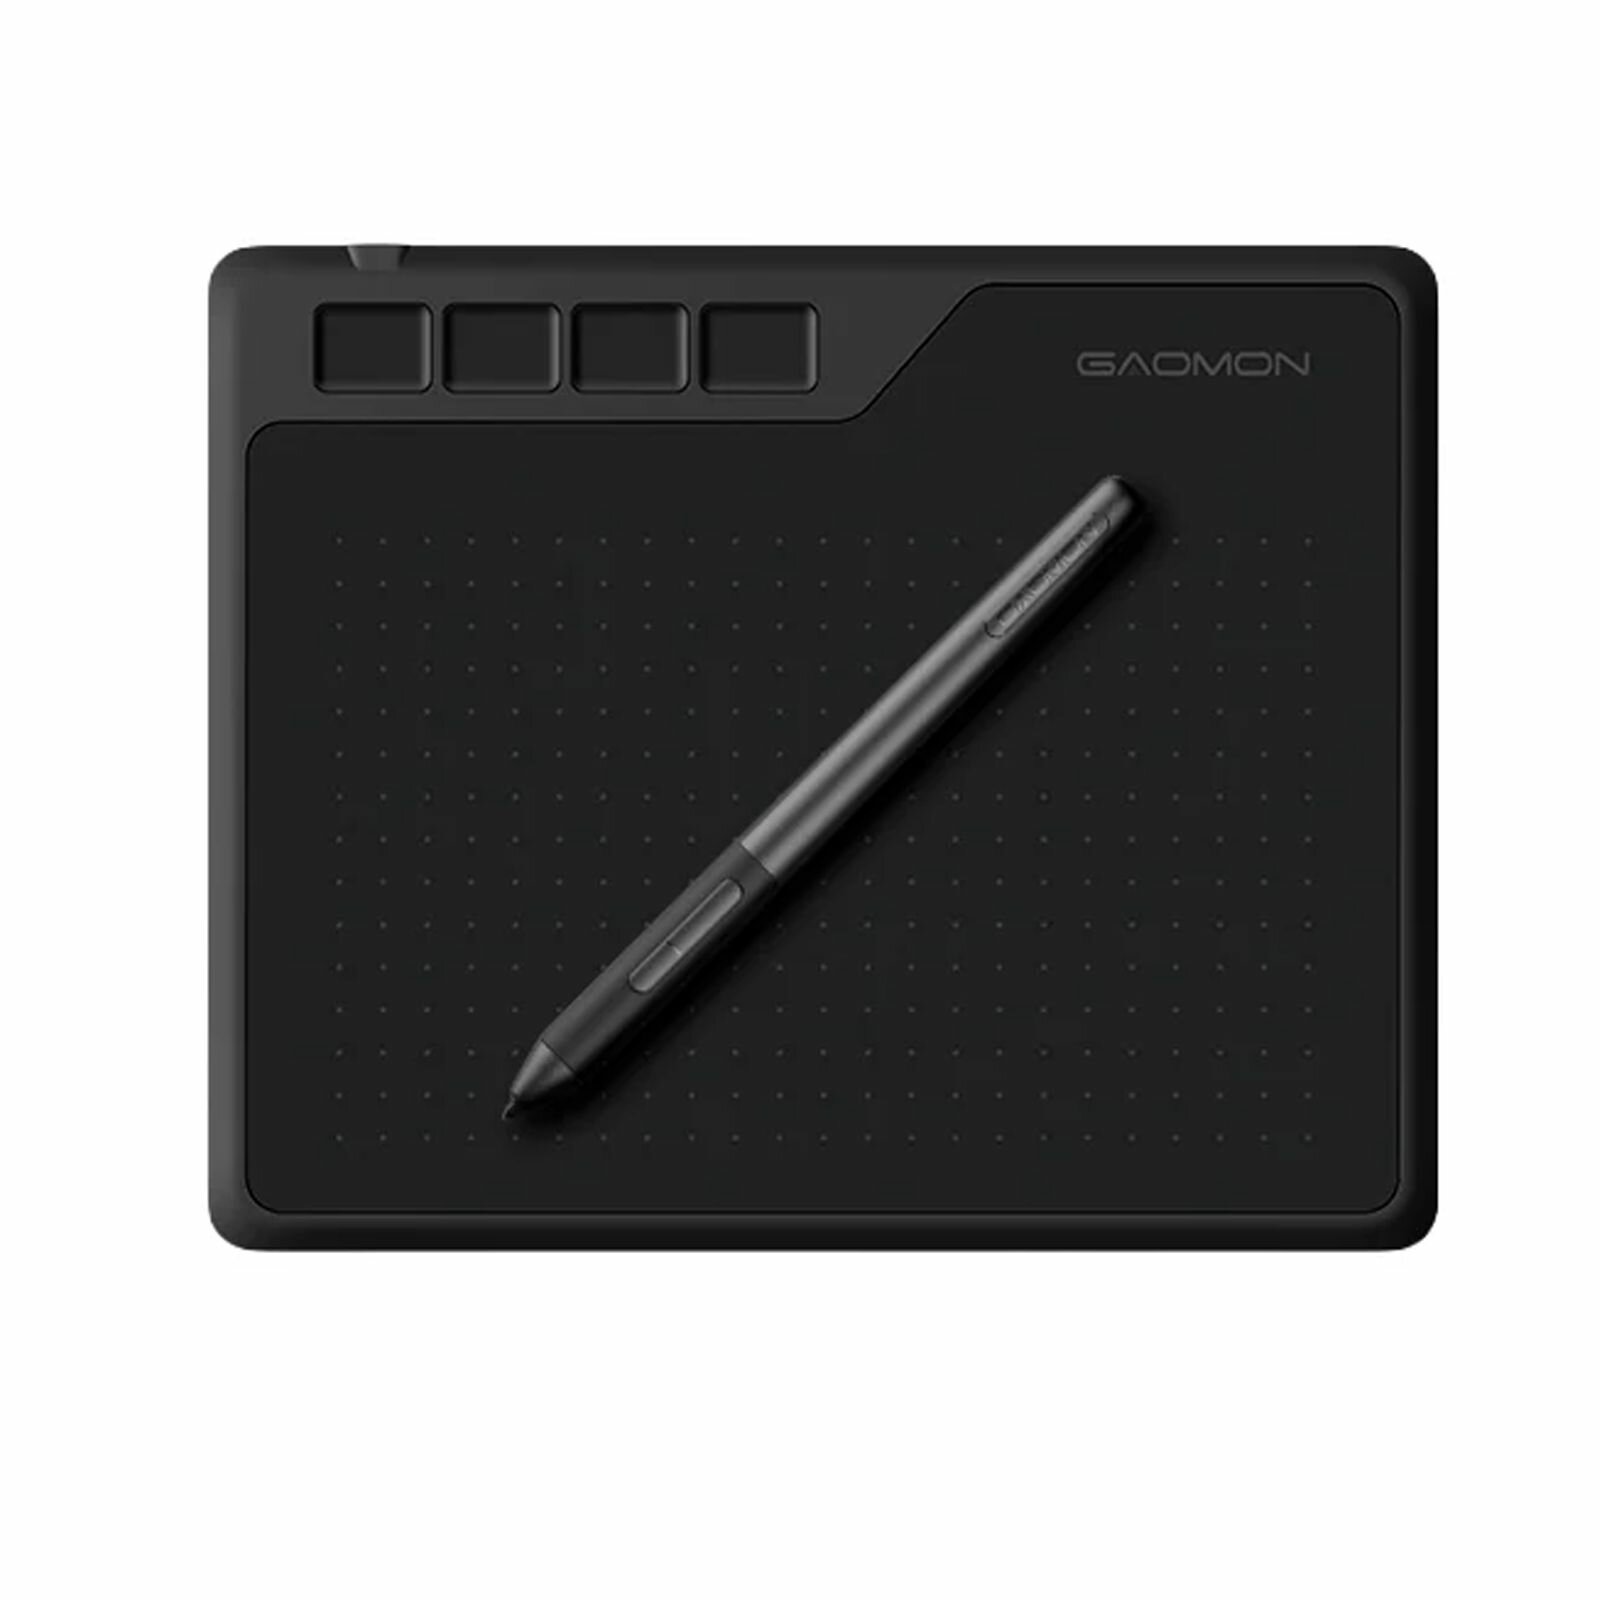 Графический планшет Gaomon S620 для рисования со стилусом цвет черный